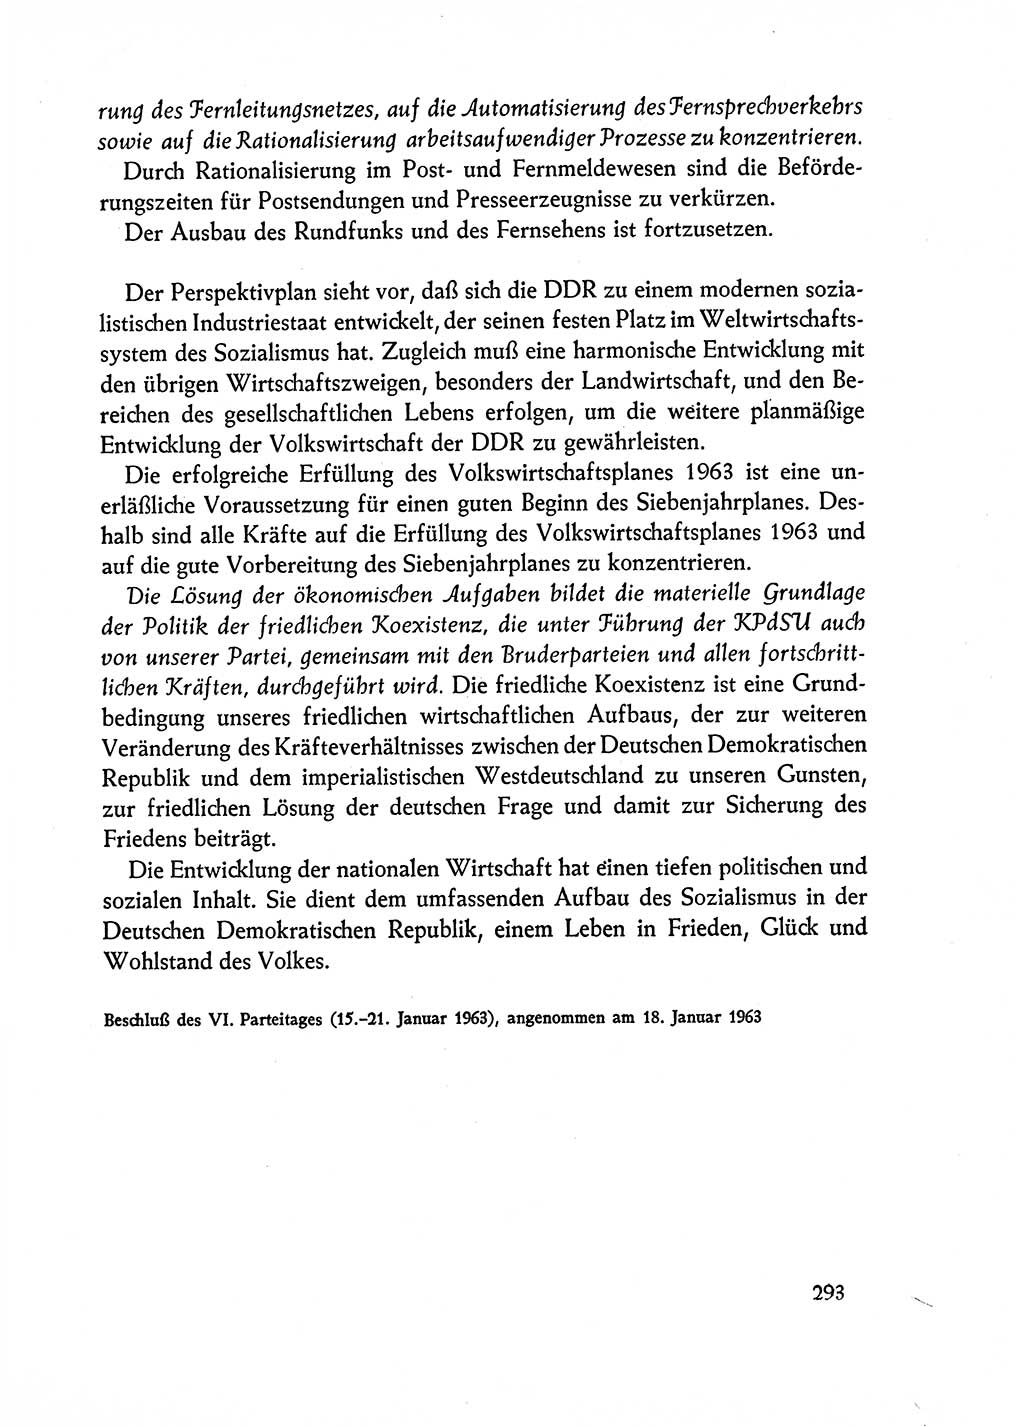 Dokumente der Sozialistischen Einheitspartei Deutschlands (SED) [Deutsche Demokratische Republik (DDR)] 1962-1963, Seite 293 (Dok. SED DDR 1962-1963, S. 293)